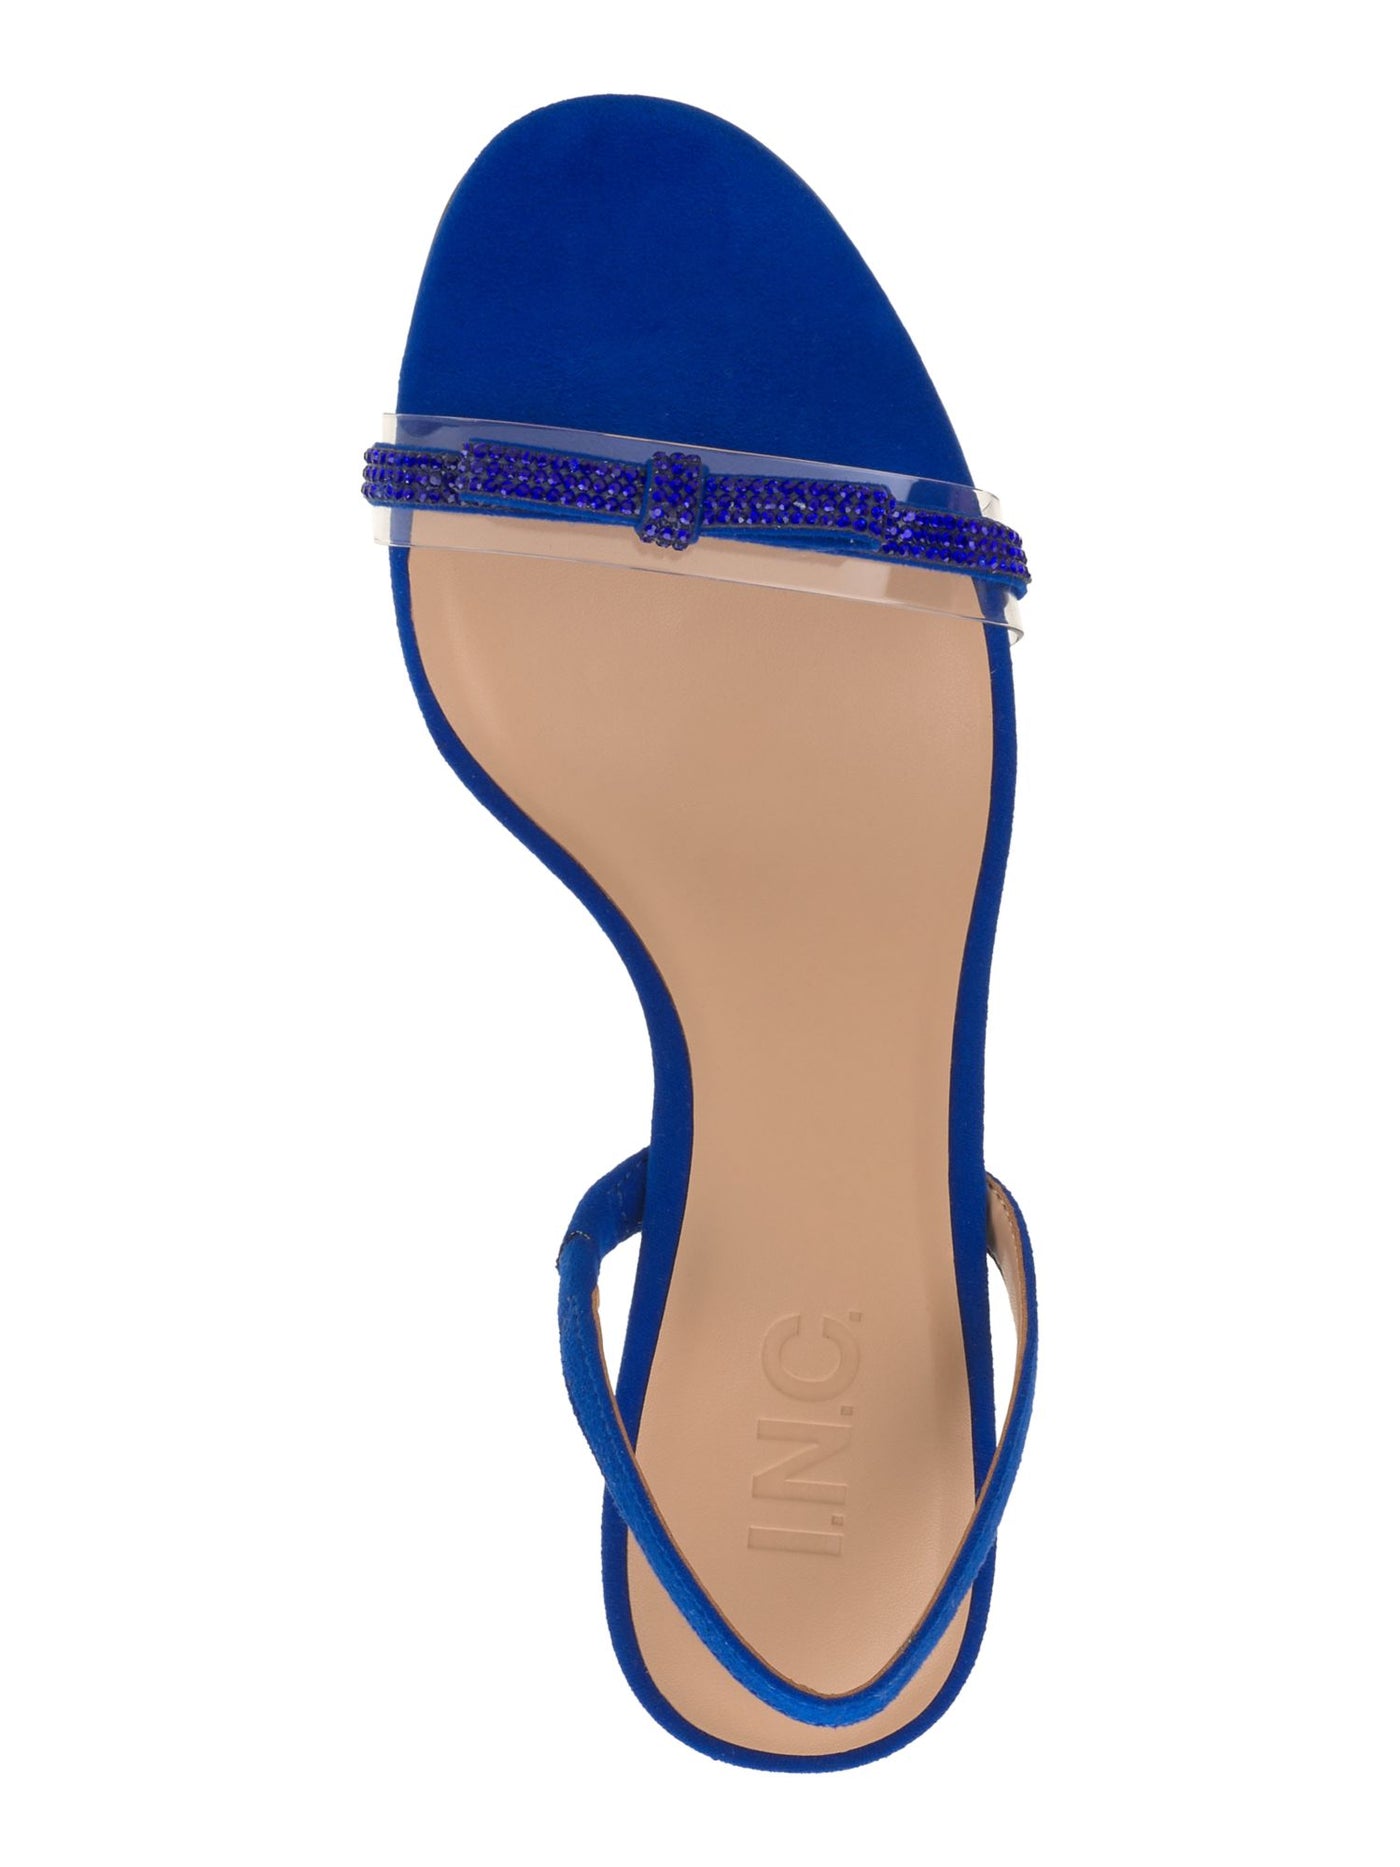 INC Womens Blue Mixed Media Goring Padded Rhinestone Bow Accent Linnette Round Toe Stiletto Slip On Dress Slingback Sandal 6 M